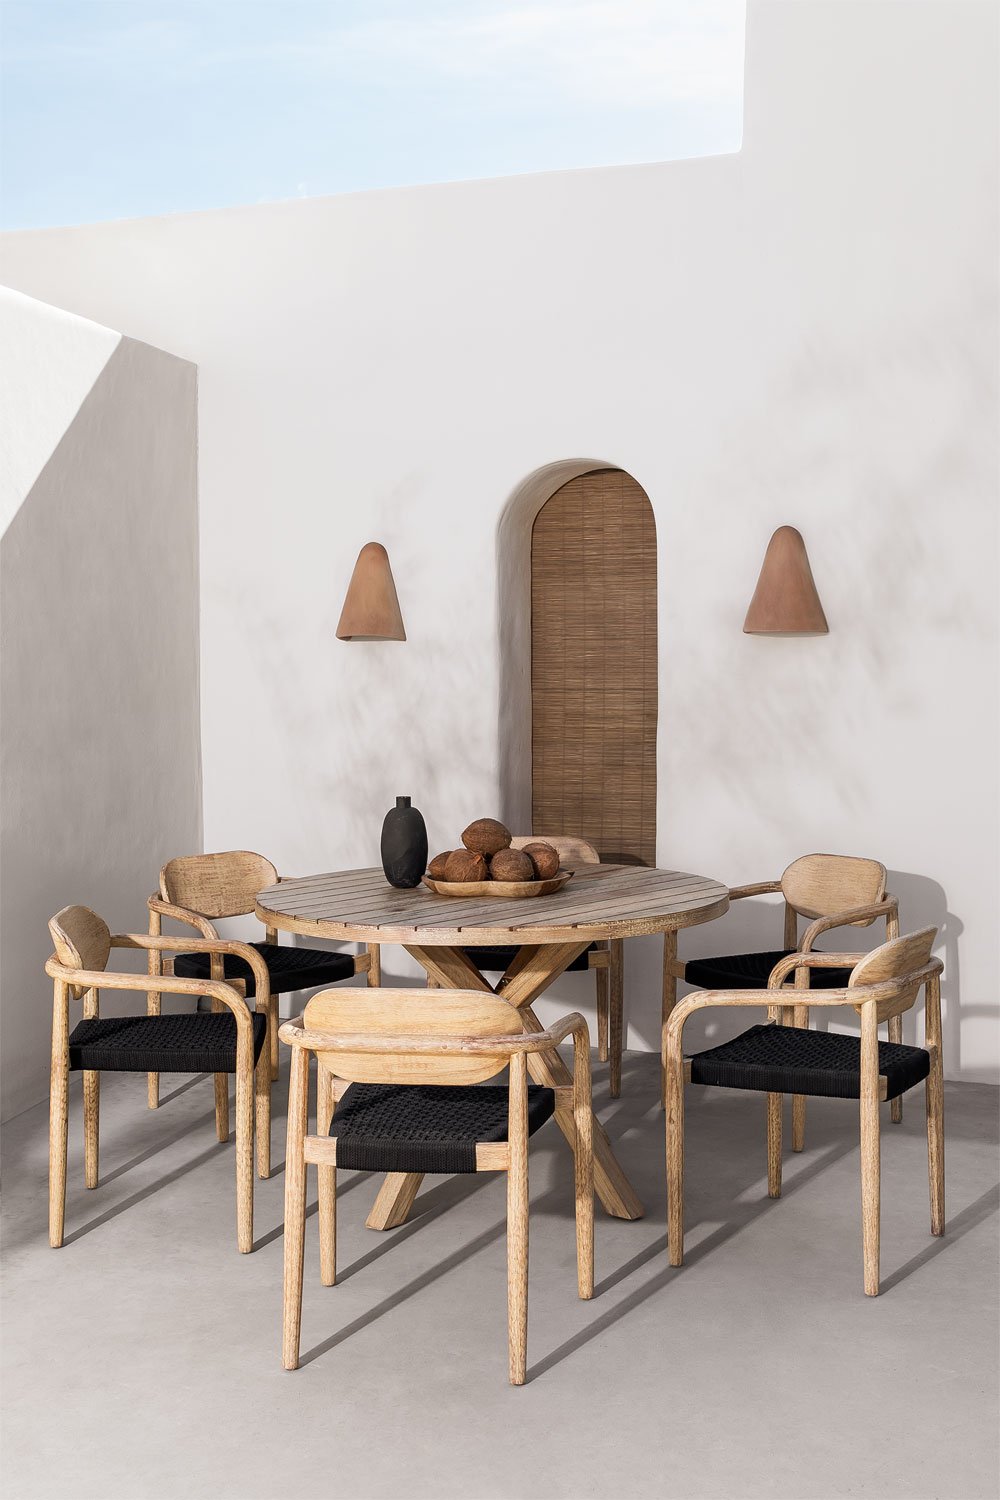 Esszimmergarnitur mit rundem Tisch (Ø 120 cm) und 6 Gartenstühlen mit Armlehnen aus Holz Naele, Galeriebild 1